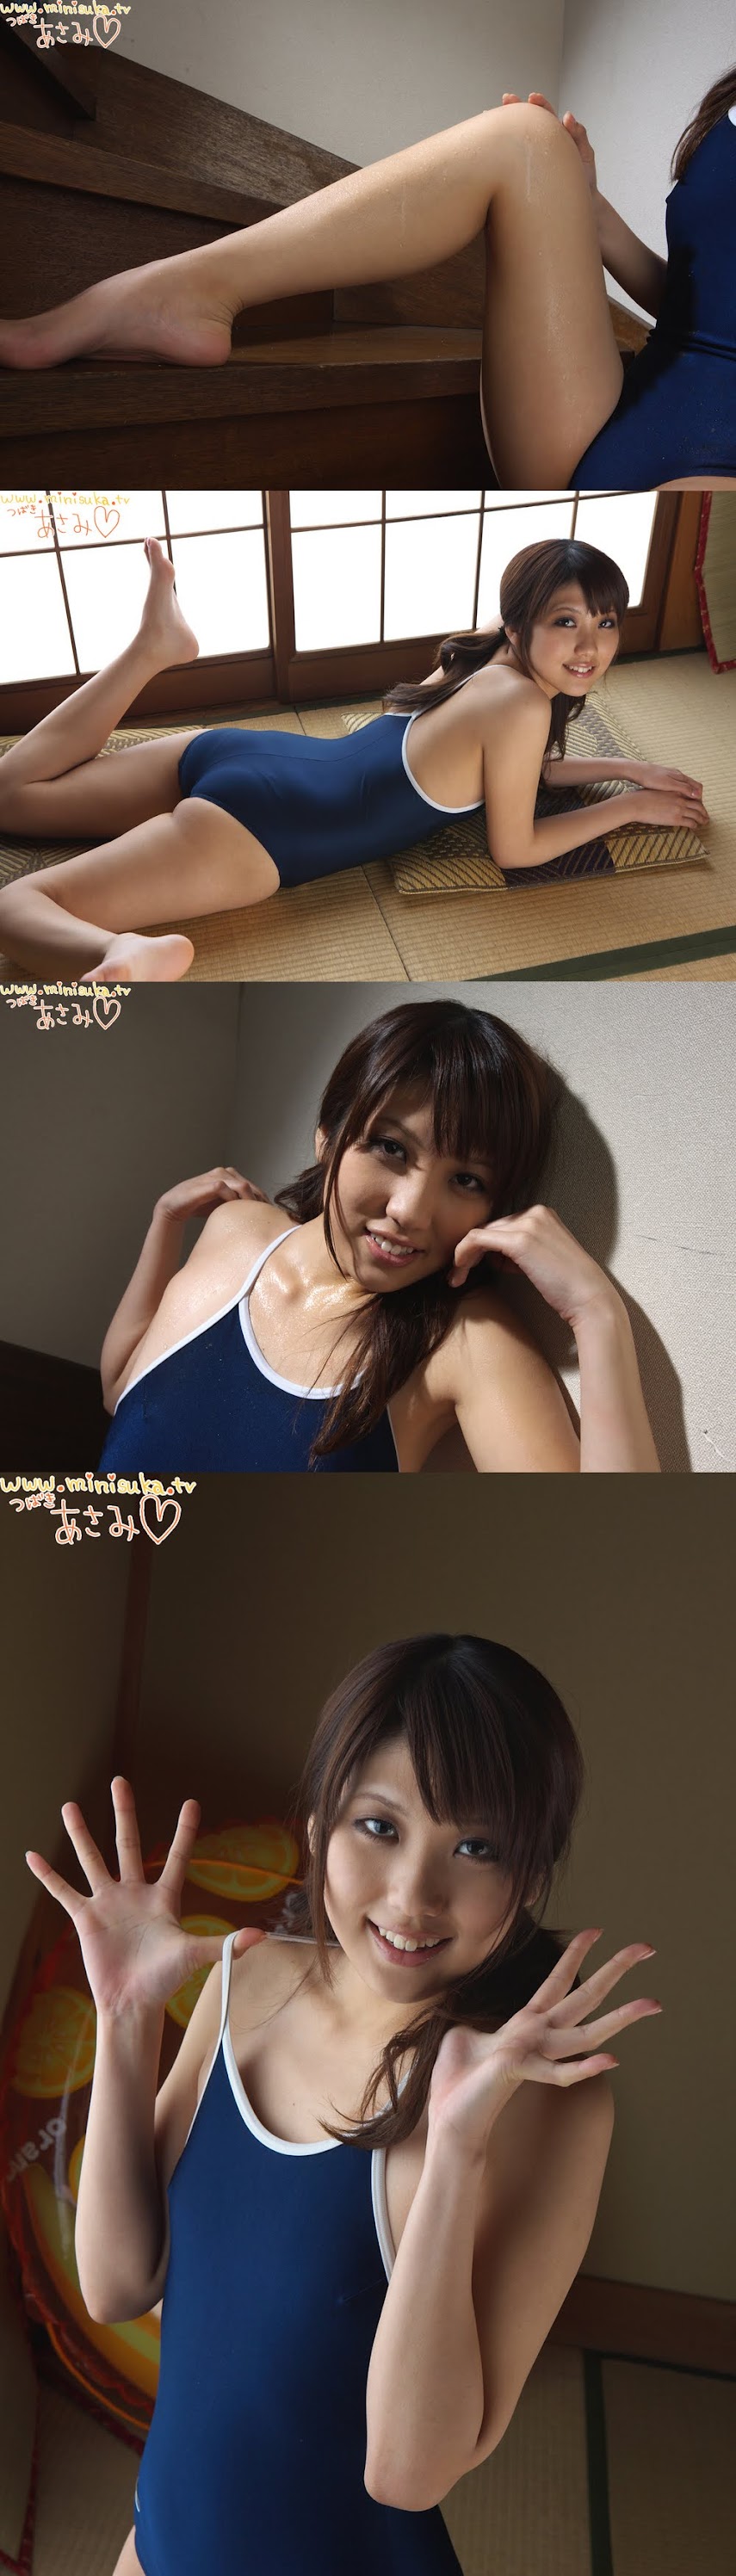 [Minisuka.tv] Asami Tsubaki (椿麻美) - Regular Gallery 03   P214666 sexy girls image jav